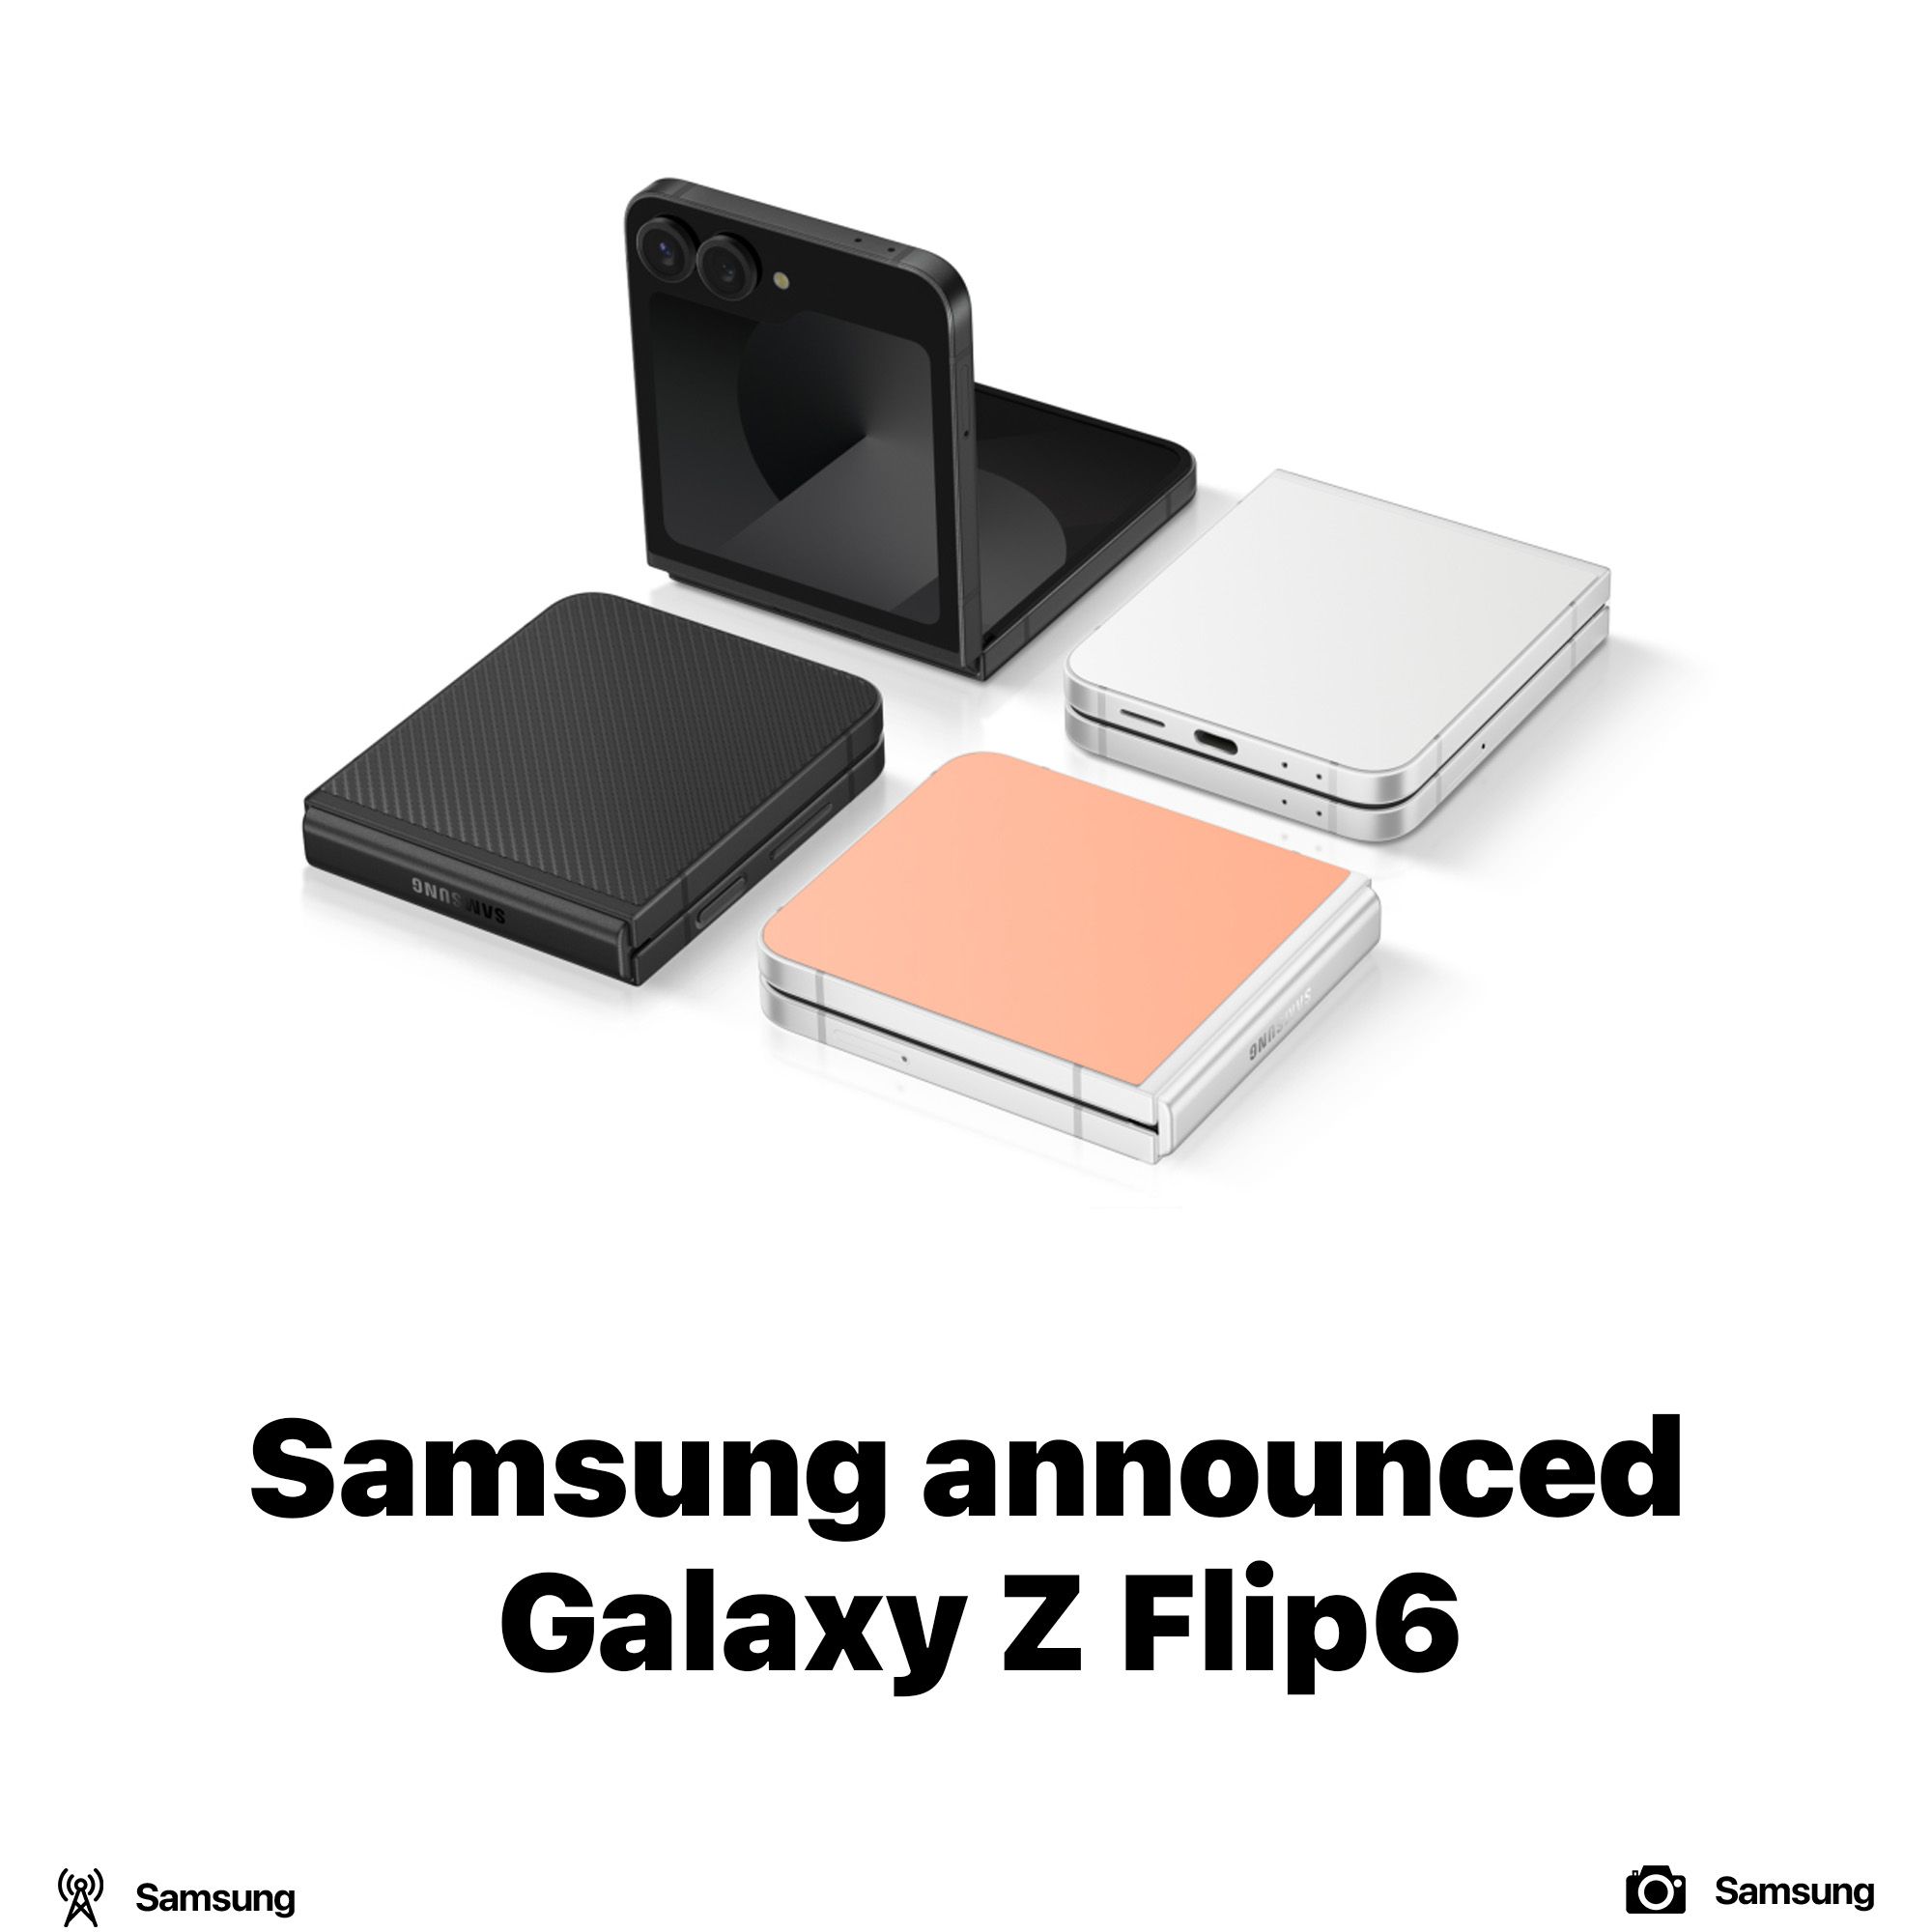 Samsung announced Galaxy Z Flip6